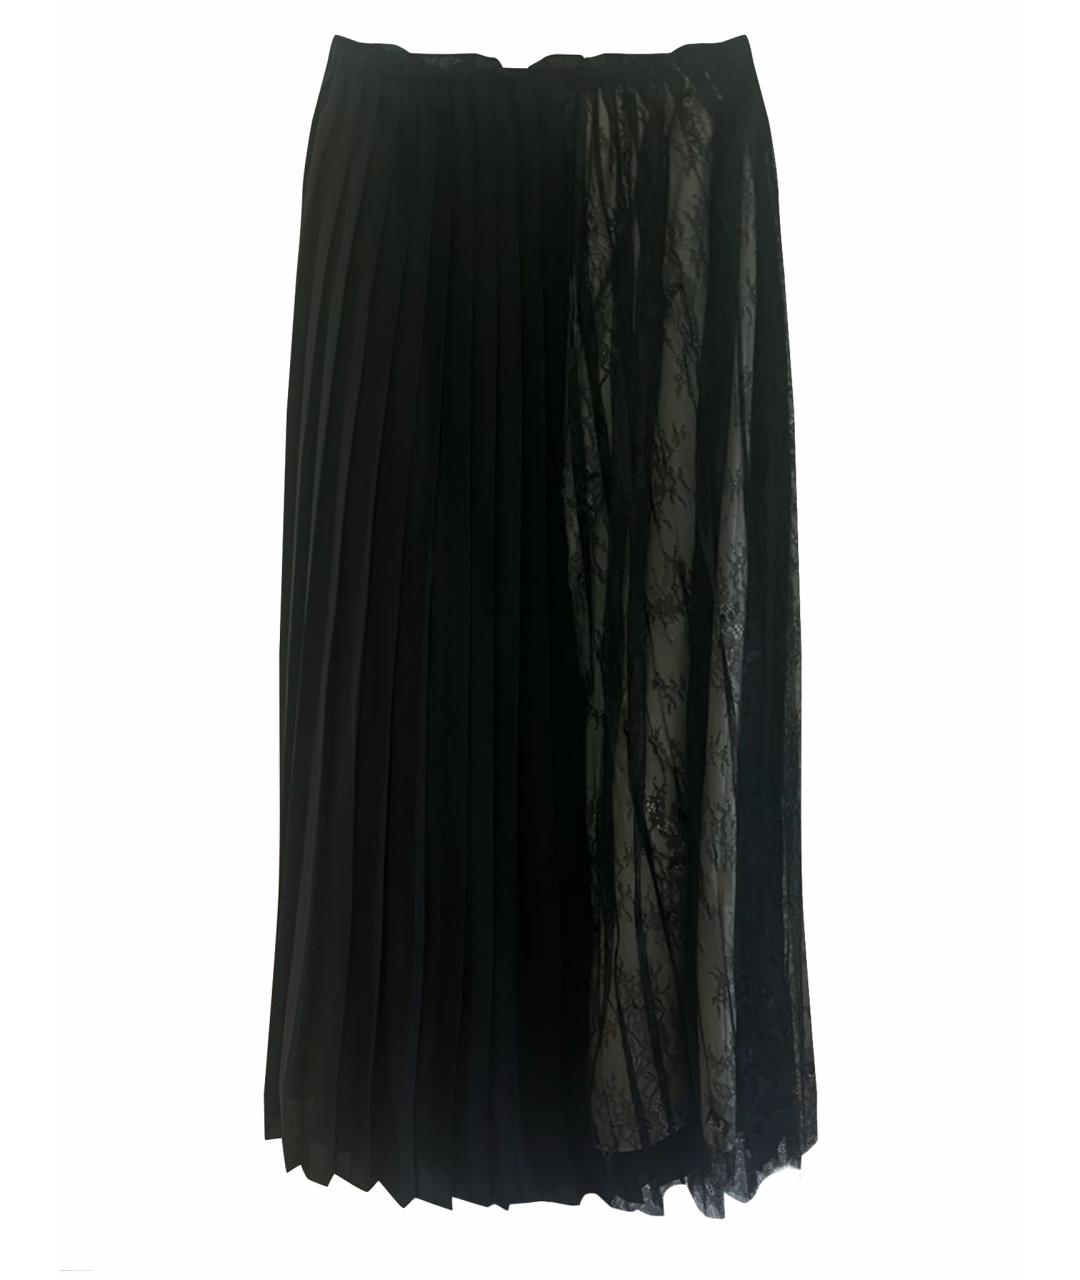 TWIN-SET Черная кружевная юбка макси, фото 1